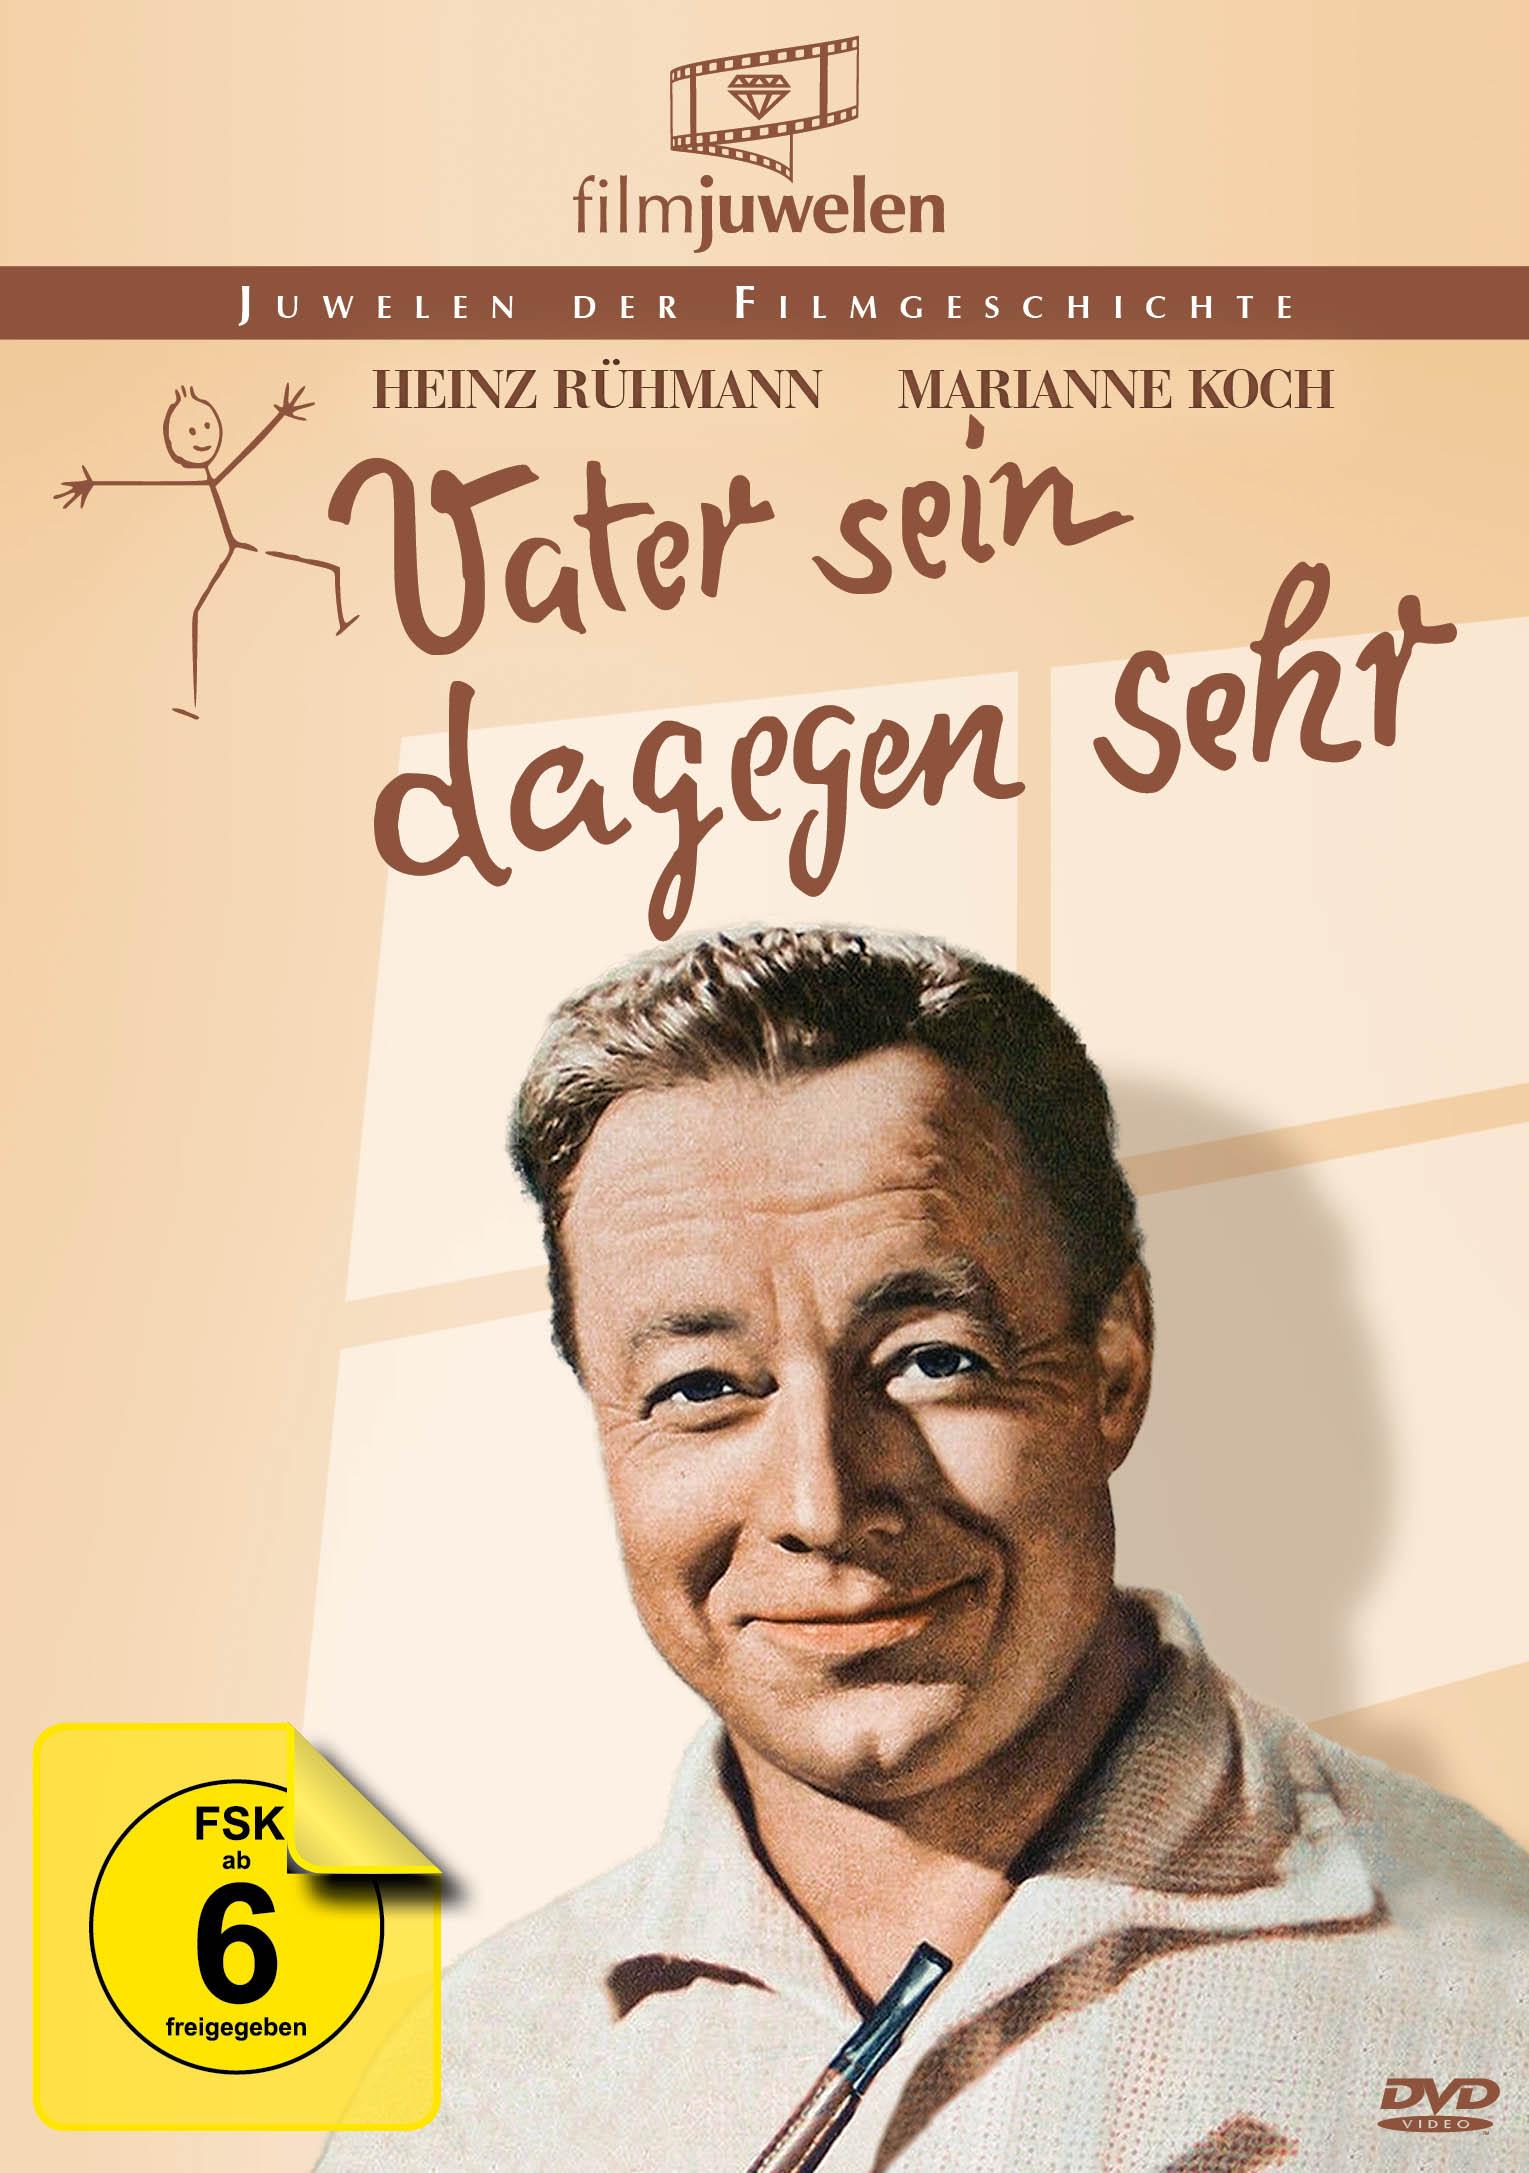 Heinz Rühmann Edition - Vater DVD sein dagegen sehr